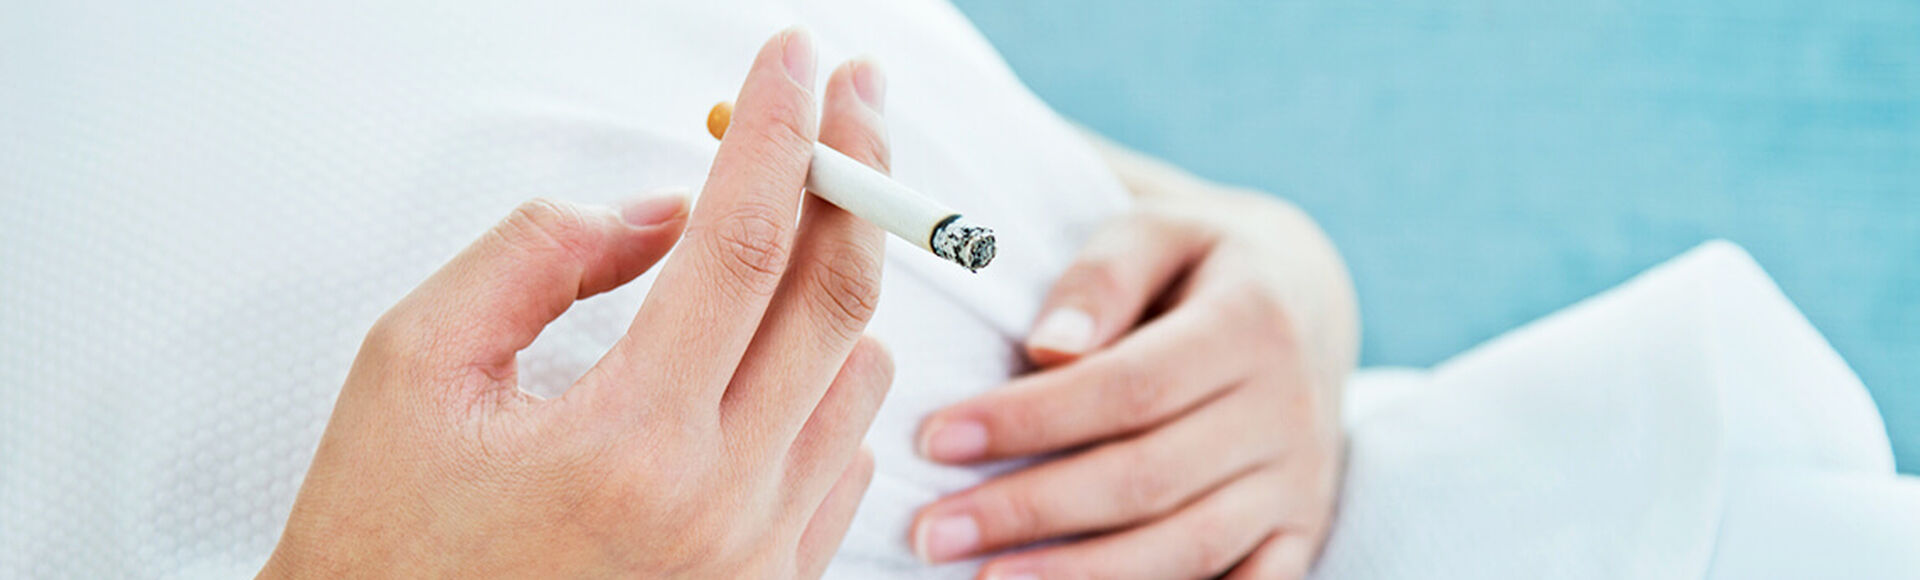 Efectos del cigarrillo en tu embarazo | by Huggies Argentina